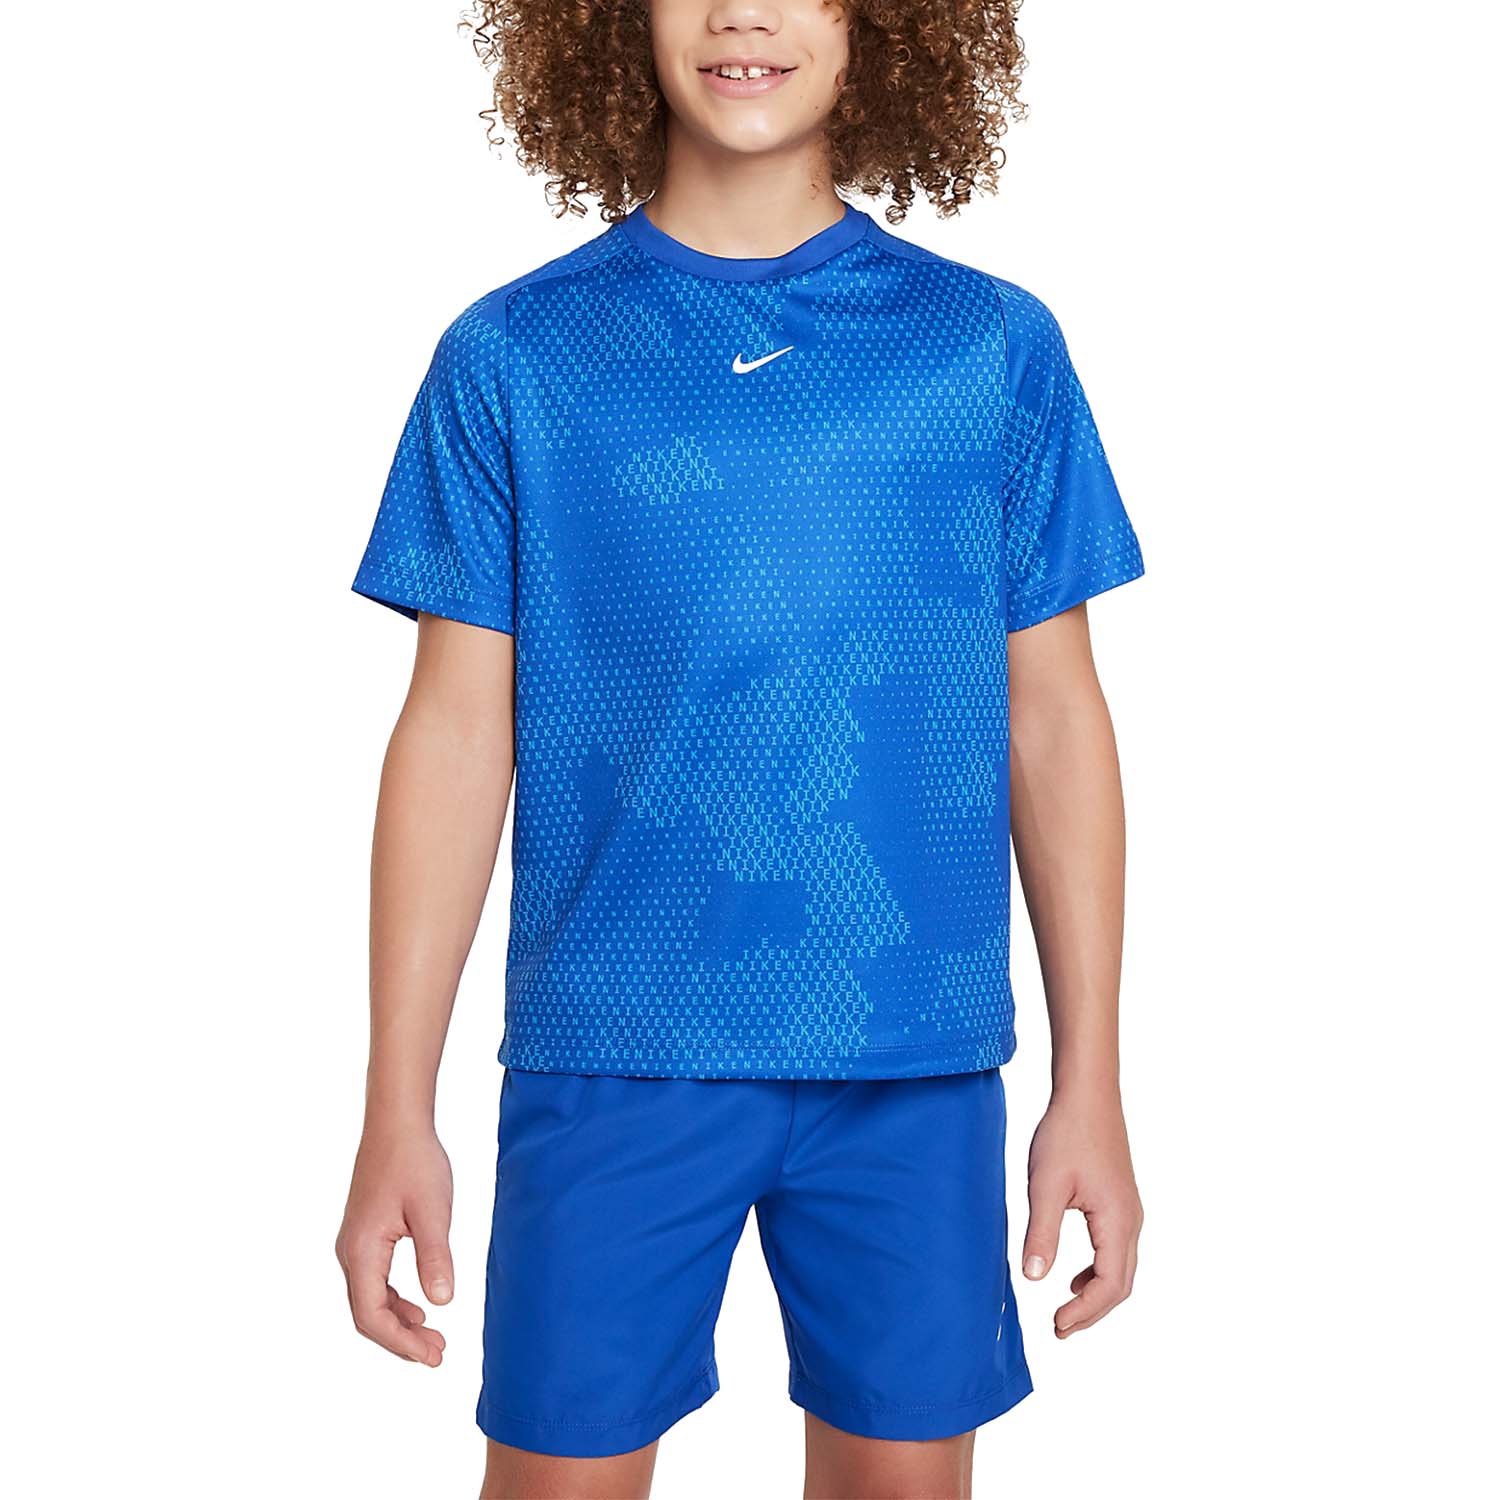 Nike Dri-FIT Multi Camo Camiseta Niño - Game Royal/White